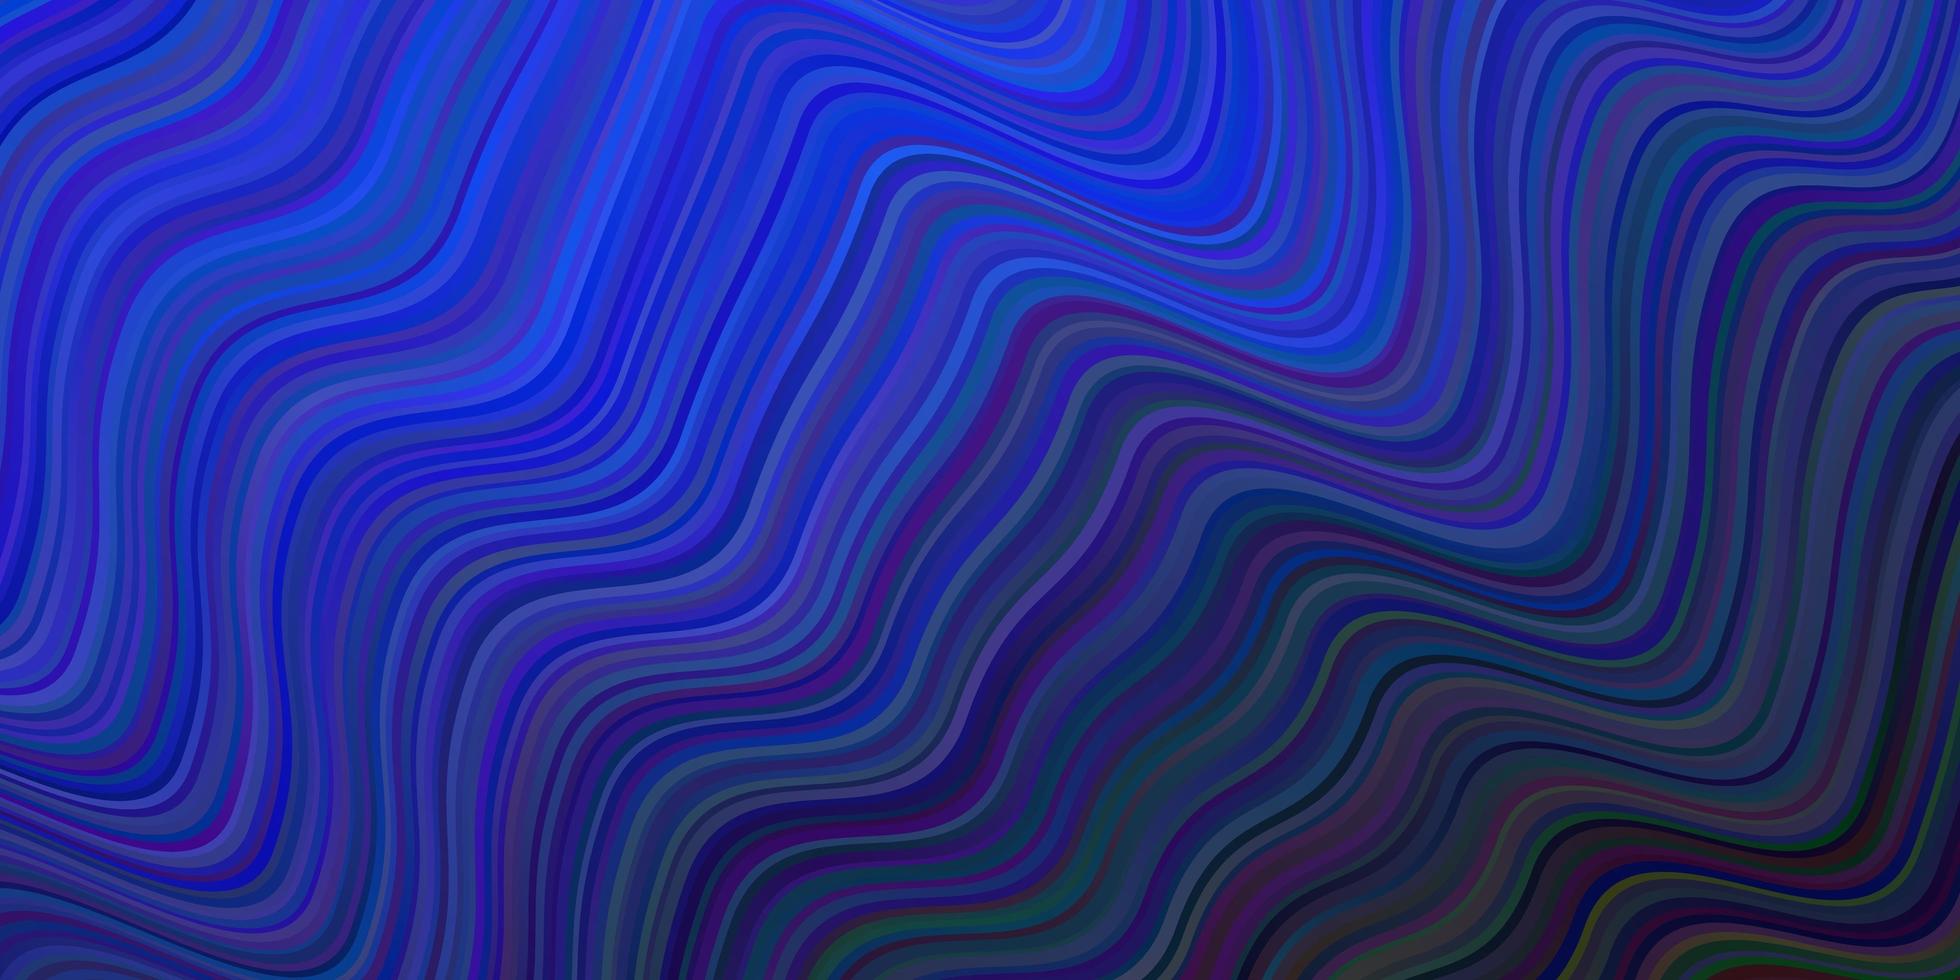 textura vector azul escuro com linhas curvas.